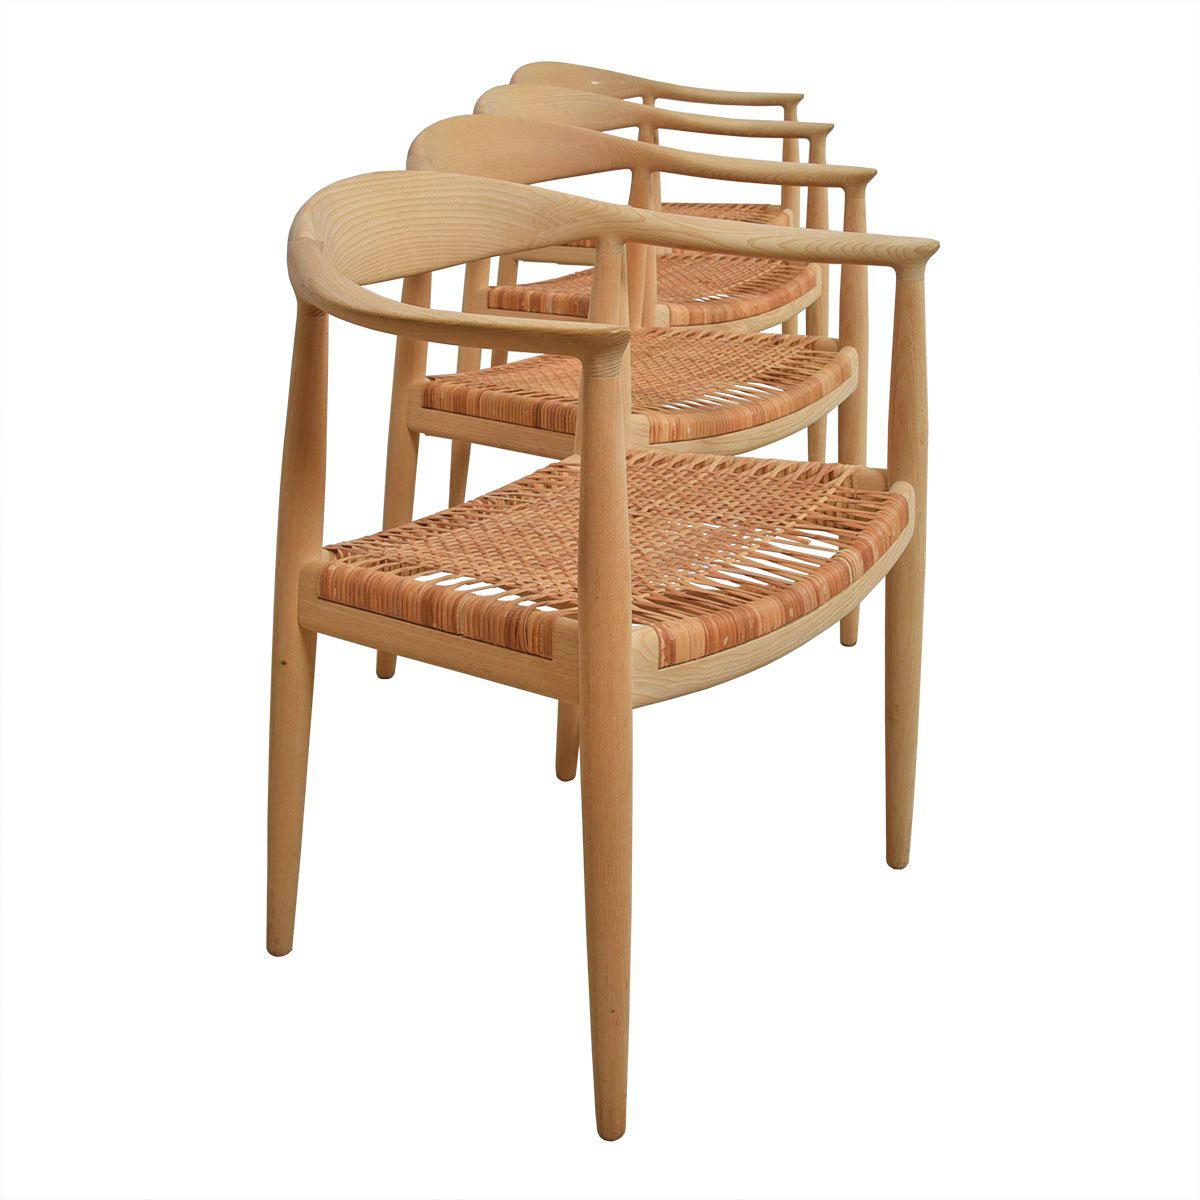 Satz von 8 Stühlen von Hans Wegner für PP Mobler

Zusätzliche Informationen:
Der von Hans Wegner entworfene PP503 Stuhl gilt als einer der typisch dänischen Entwürfe, die die modernistische Bewegung des mittleren Jahrhunderts im Bereich der